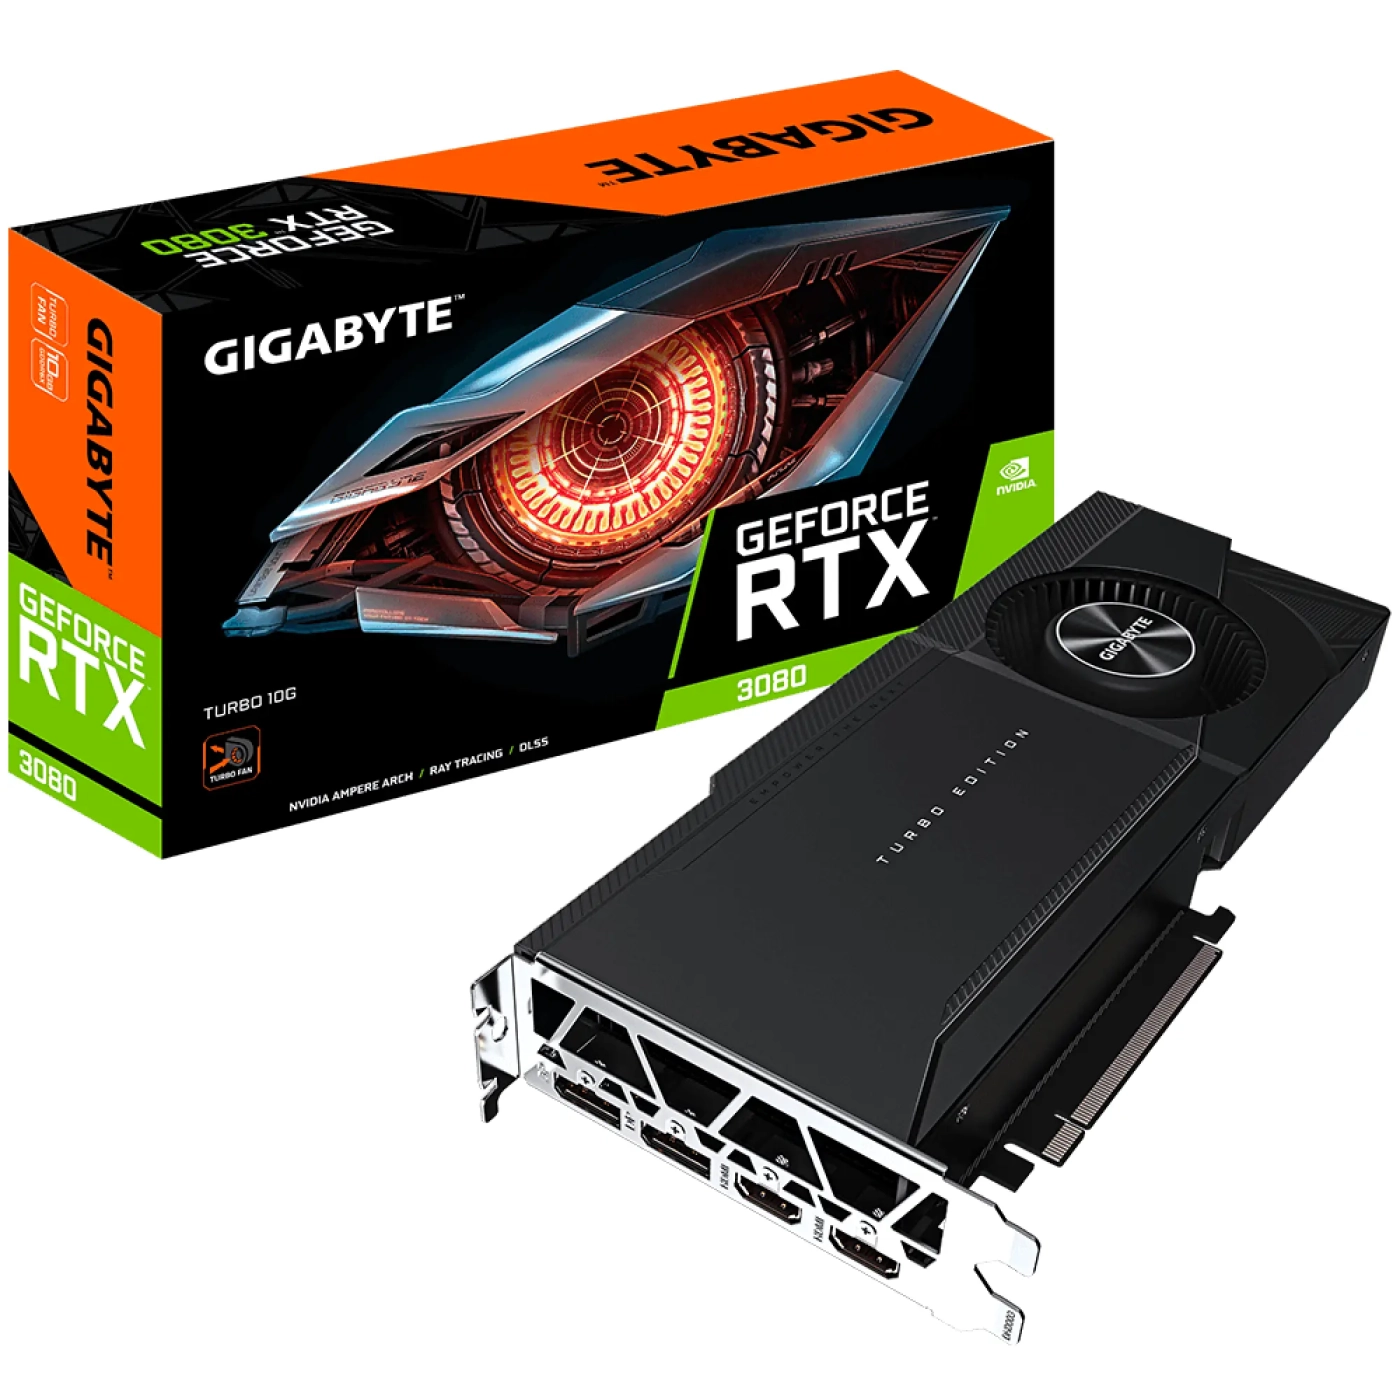 Купить Видеокарта GIGABYTE GeForce RTX 3080 TURBO 10G (rev. 2.0) - фото 7